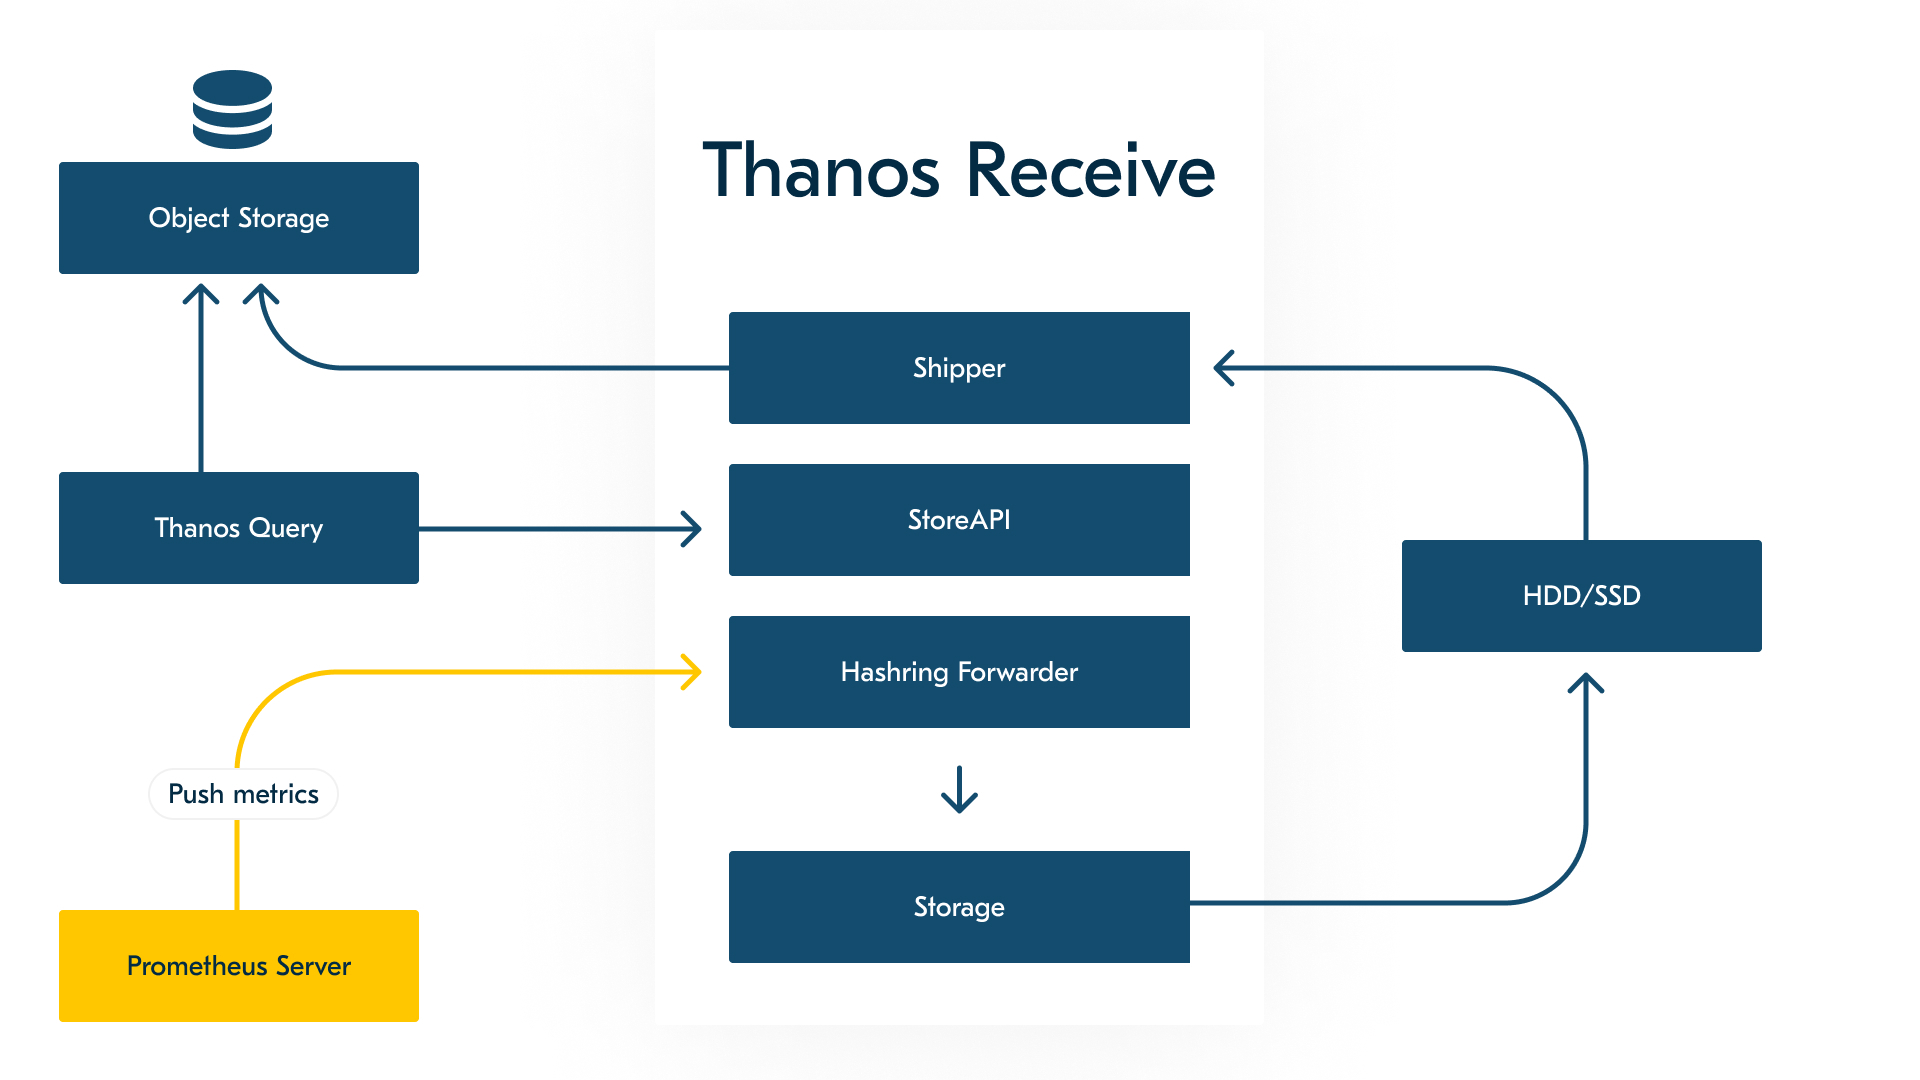 Упрощённая схема Thanos Receive